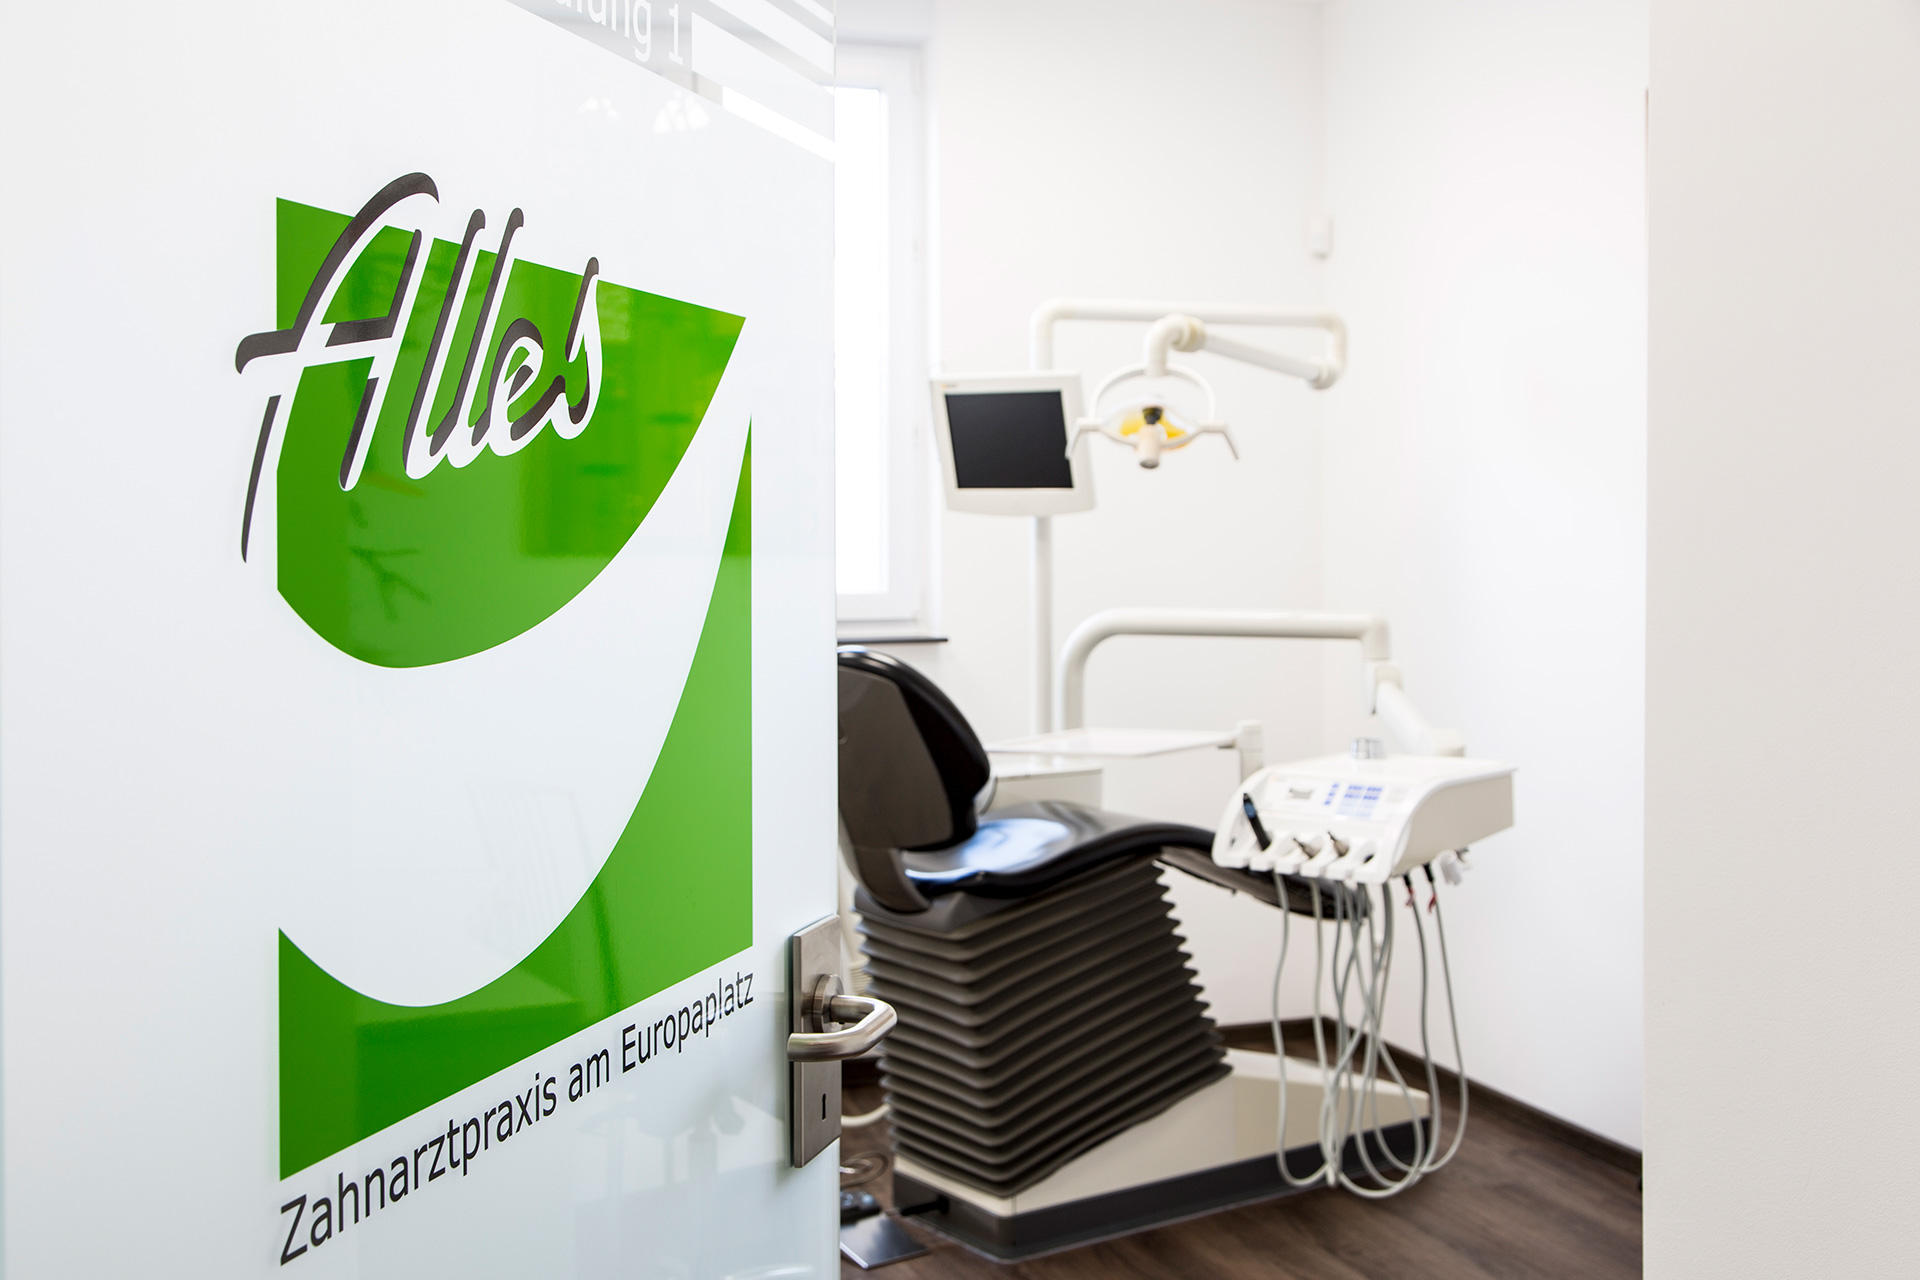 Kundenbild groß 3 Zahnarztpraxis am Europaplatz | Christian Alles